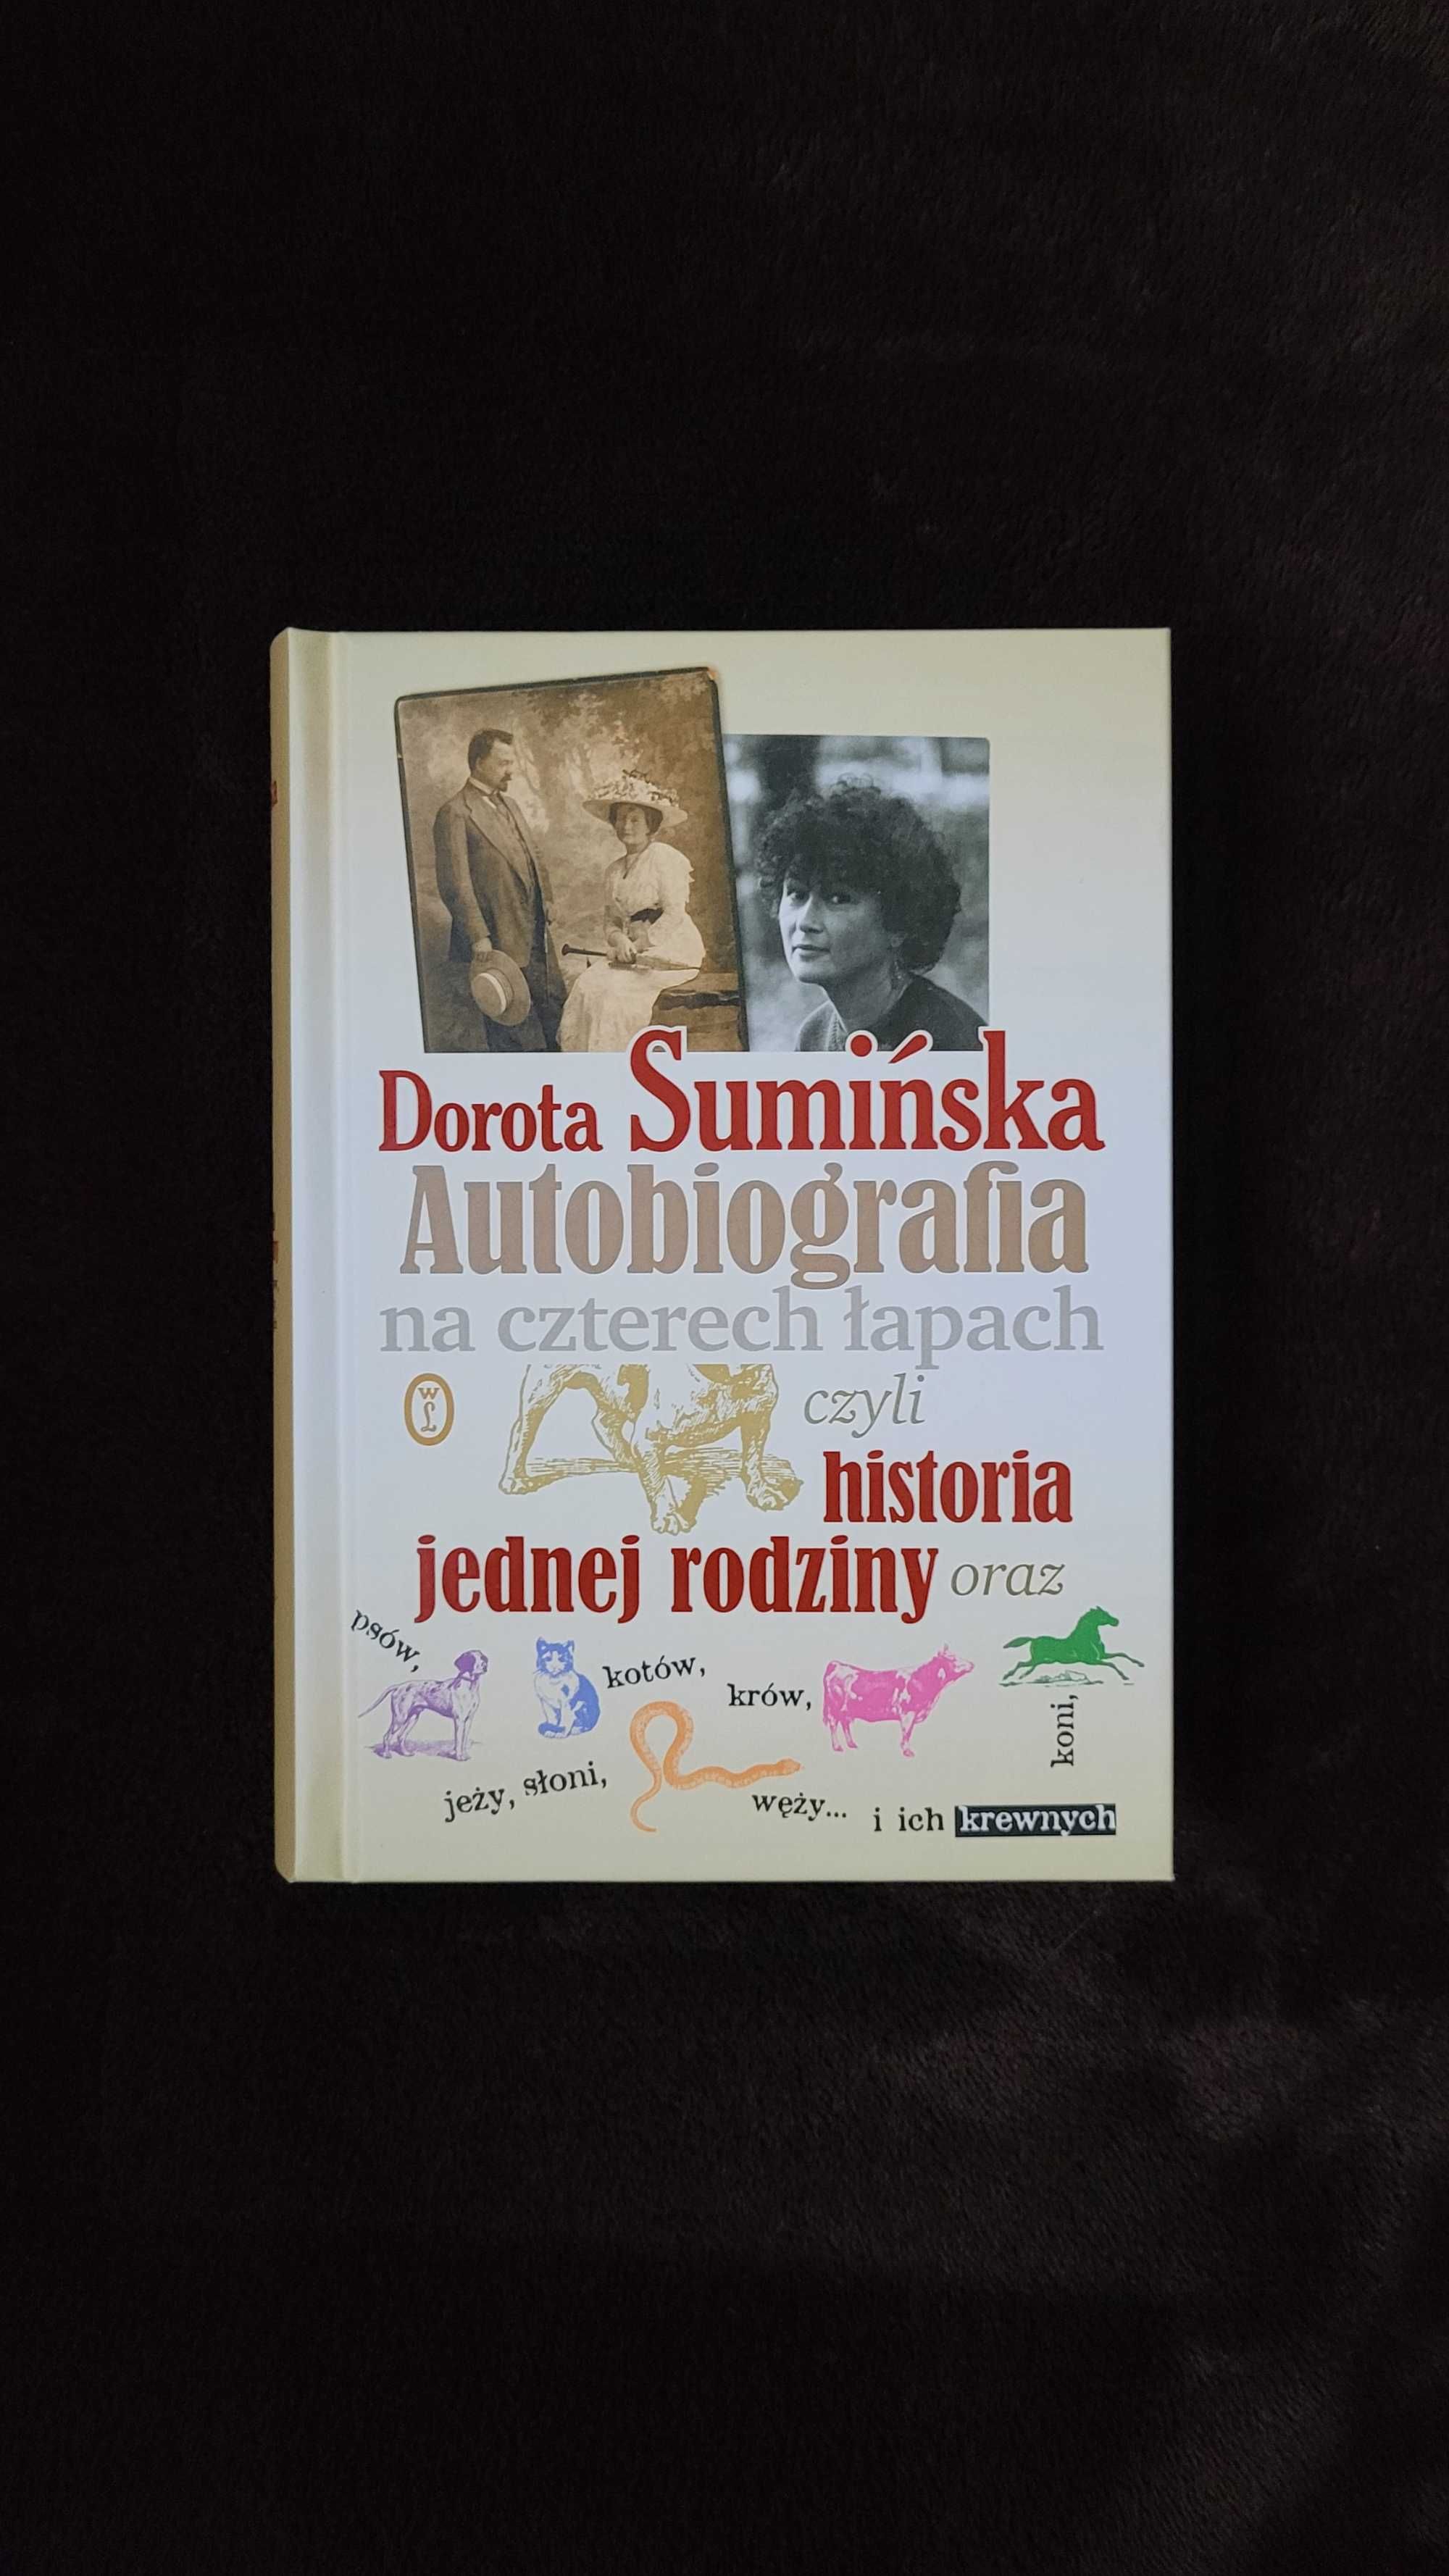 Książka: "Autobiografia na czterech łapach", Dorota Sumińska